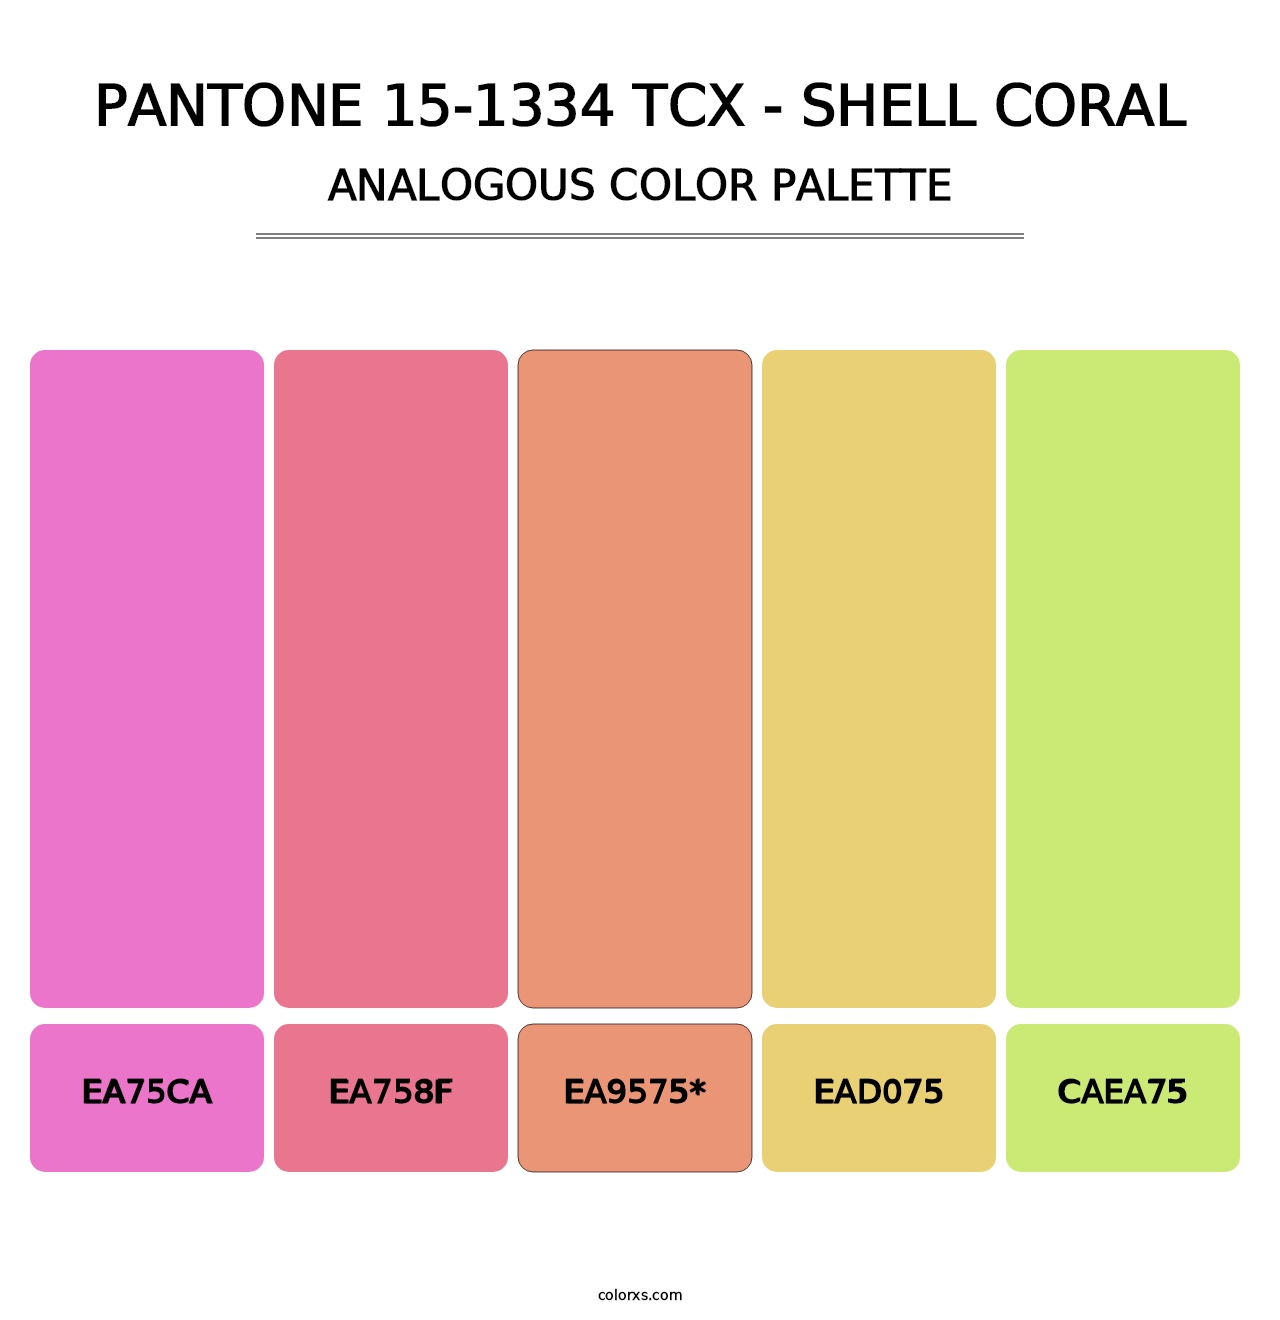 PANTONE 15-1334 TCX - Shell Coral - Analogous Color Palette